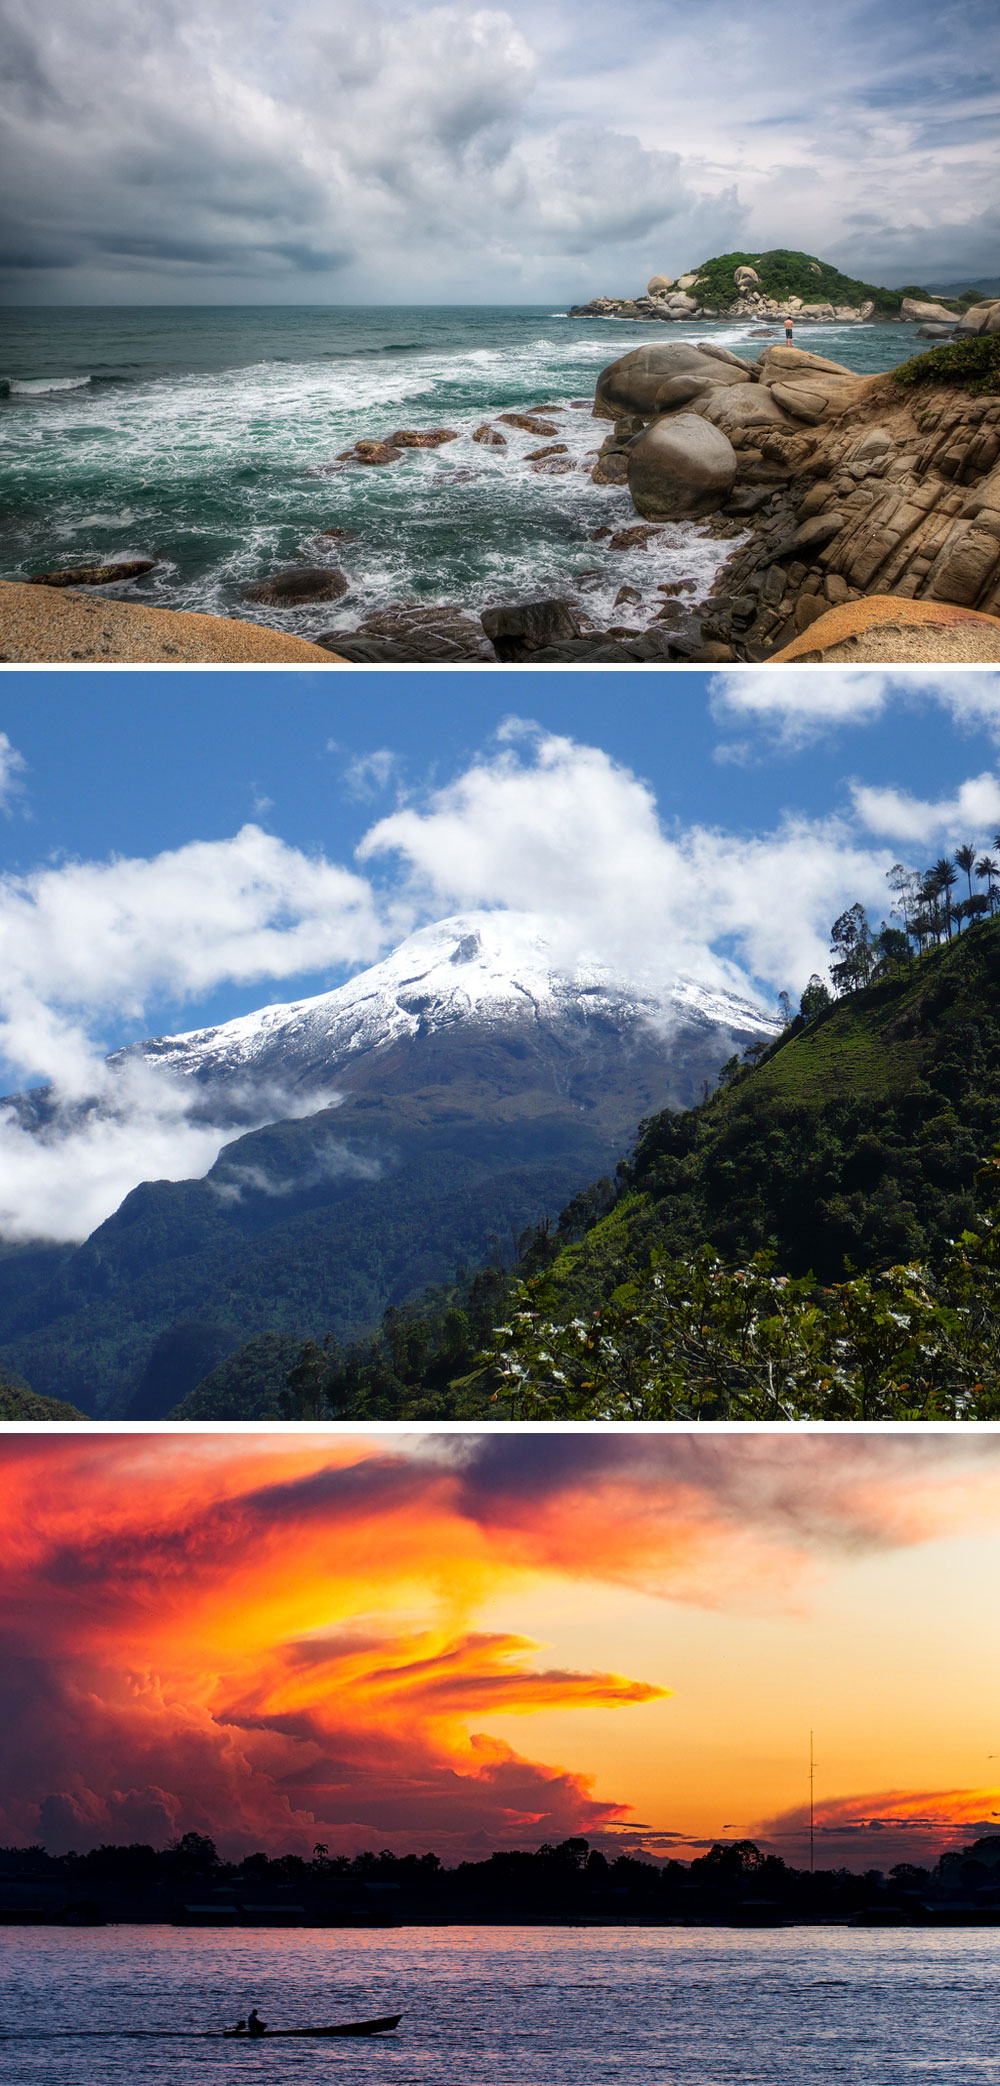 Fakta: Colombias landskap består av hav, fjell, elver og regnskog.